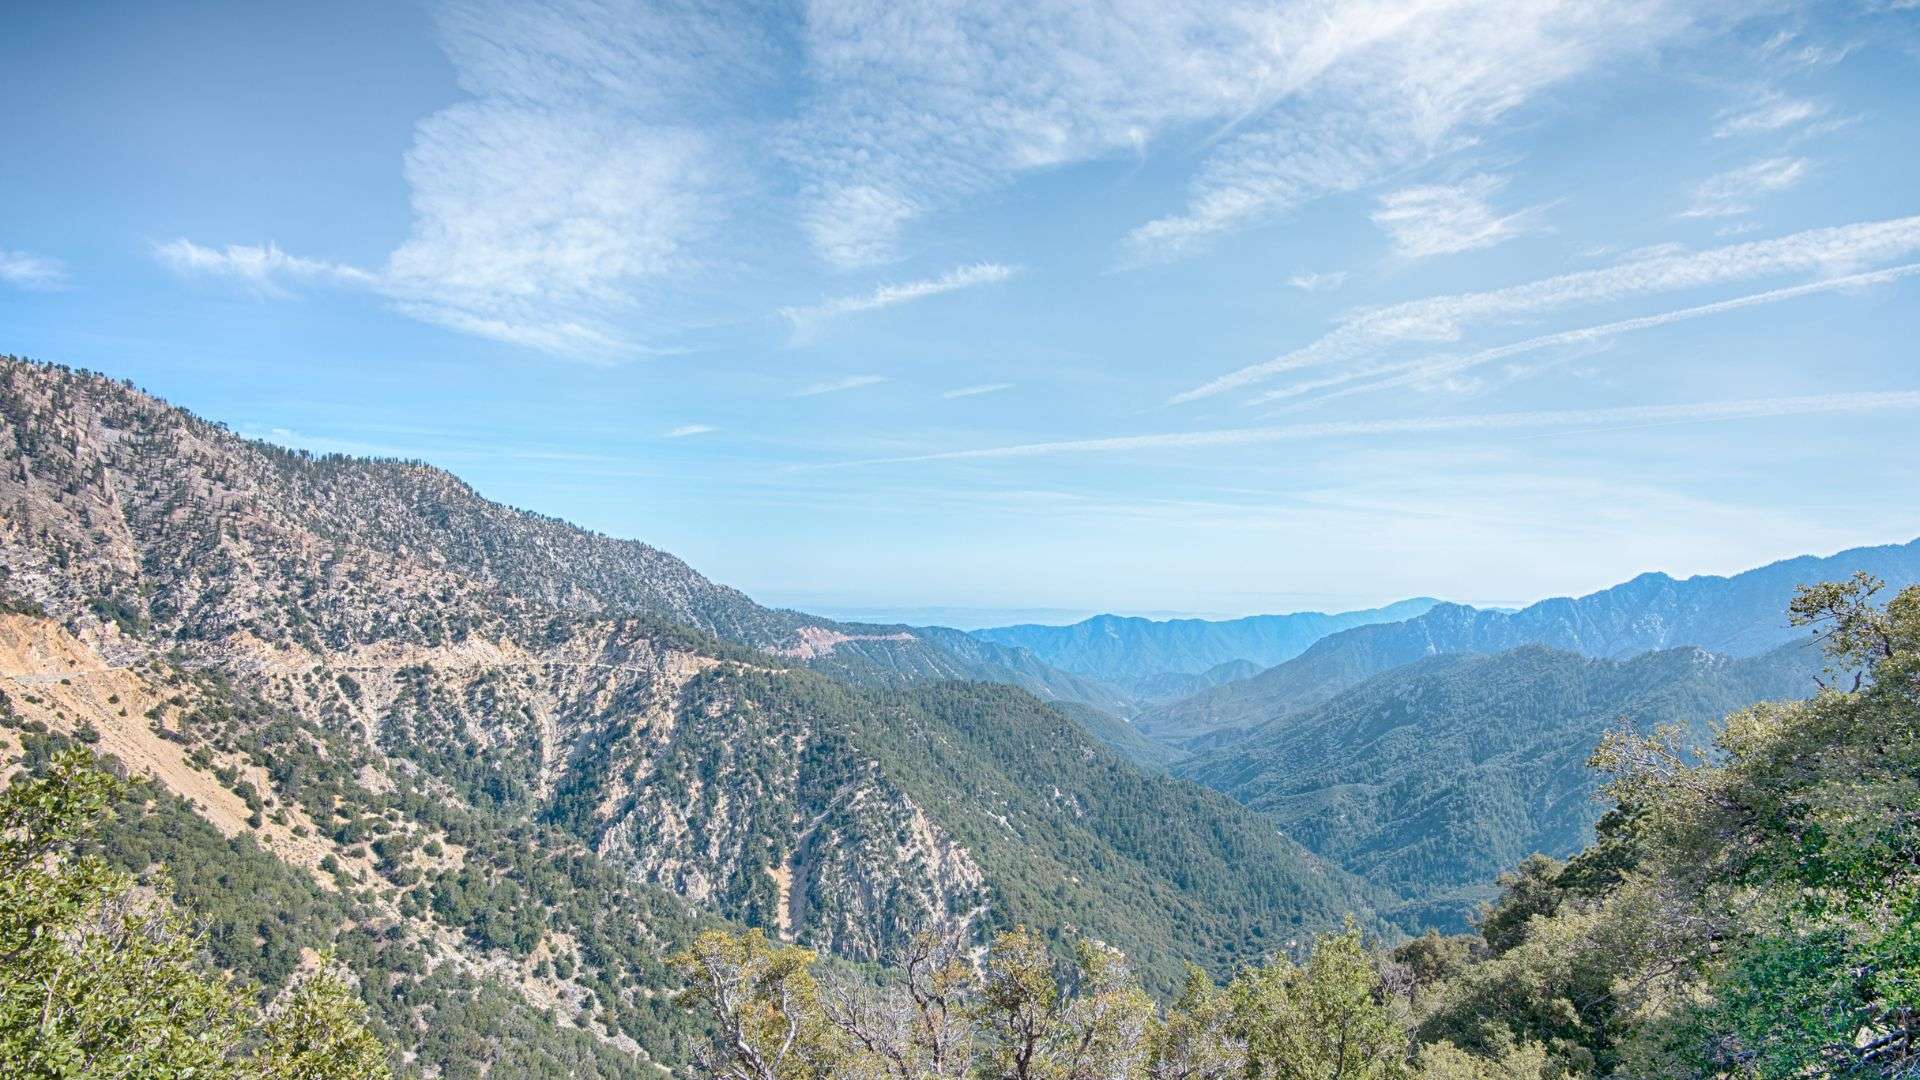 mountains in california near LA